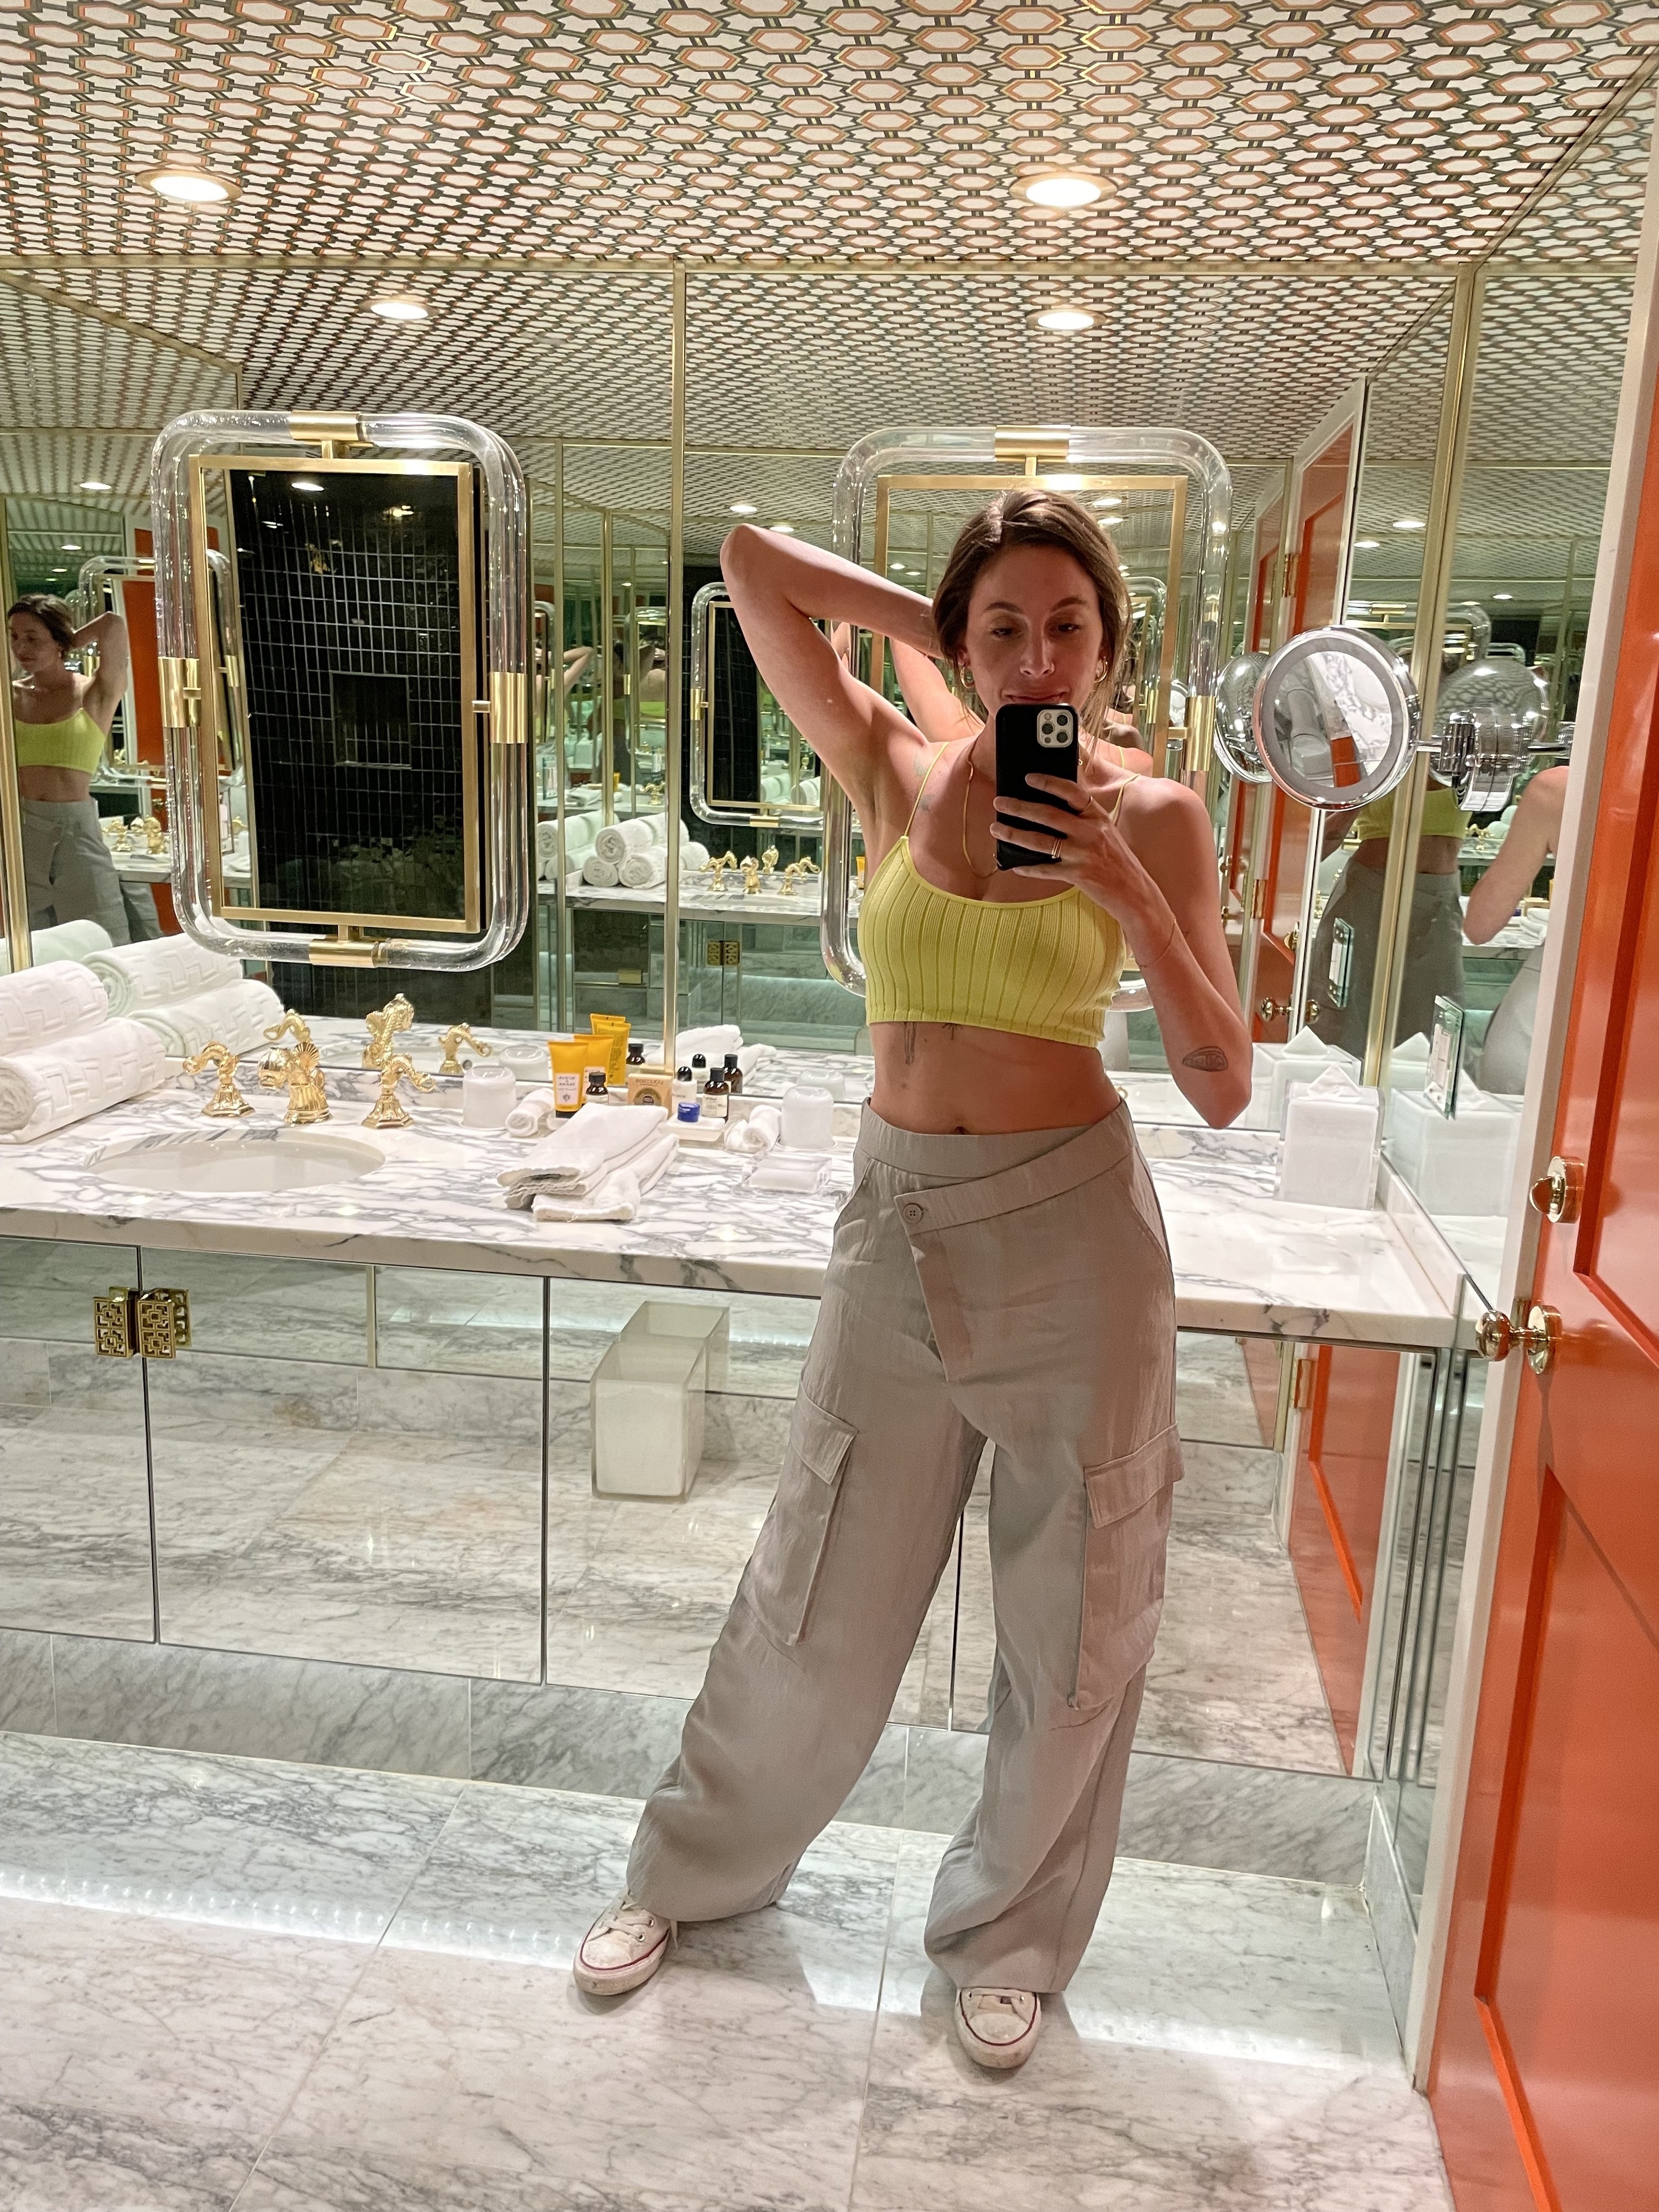 A mirror selfie Lara took in the glamorous bathroom